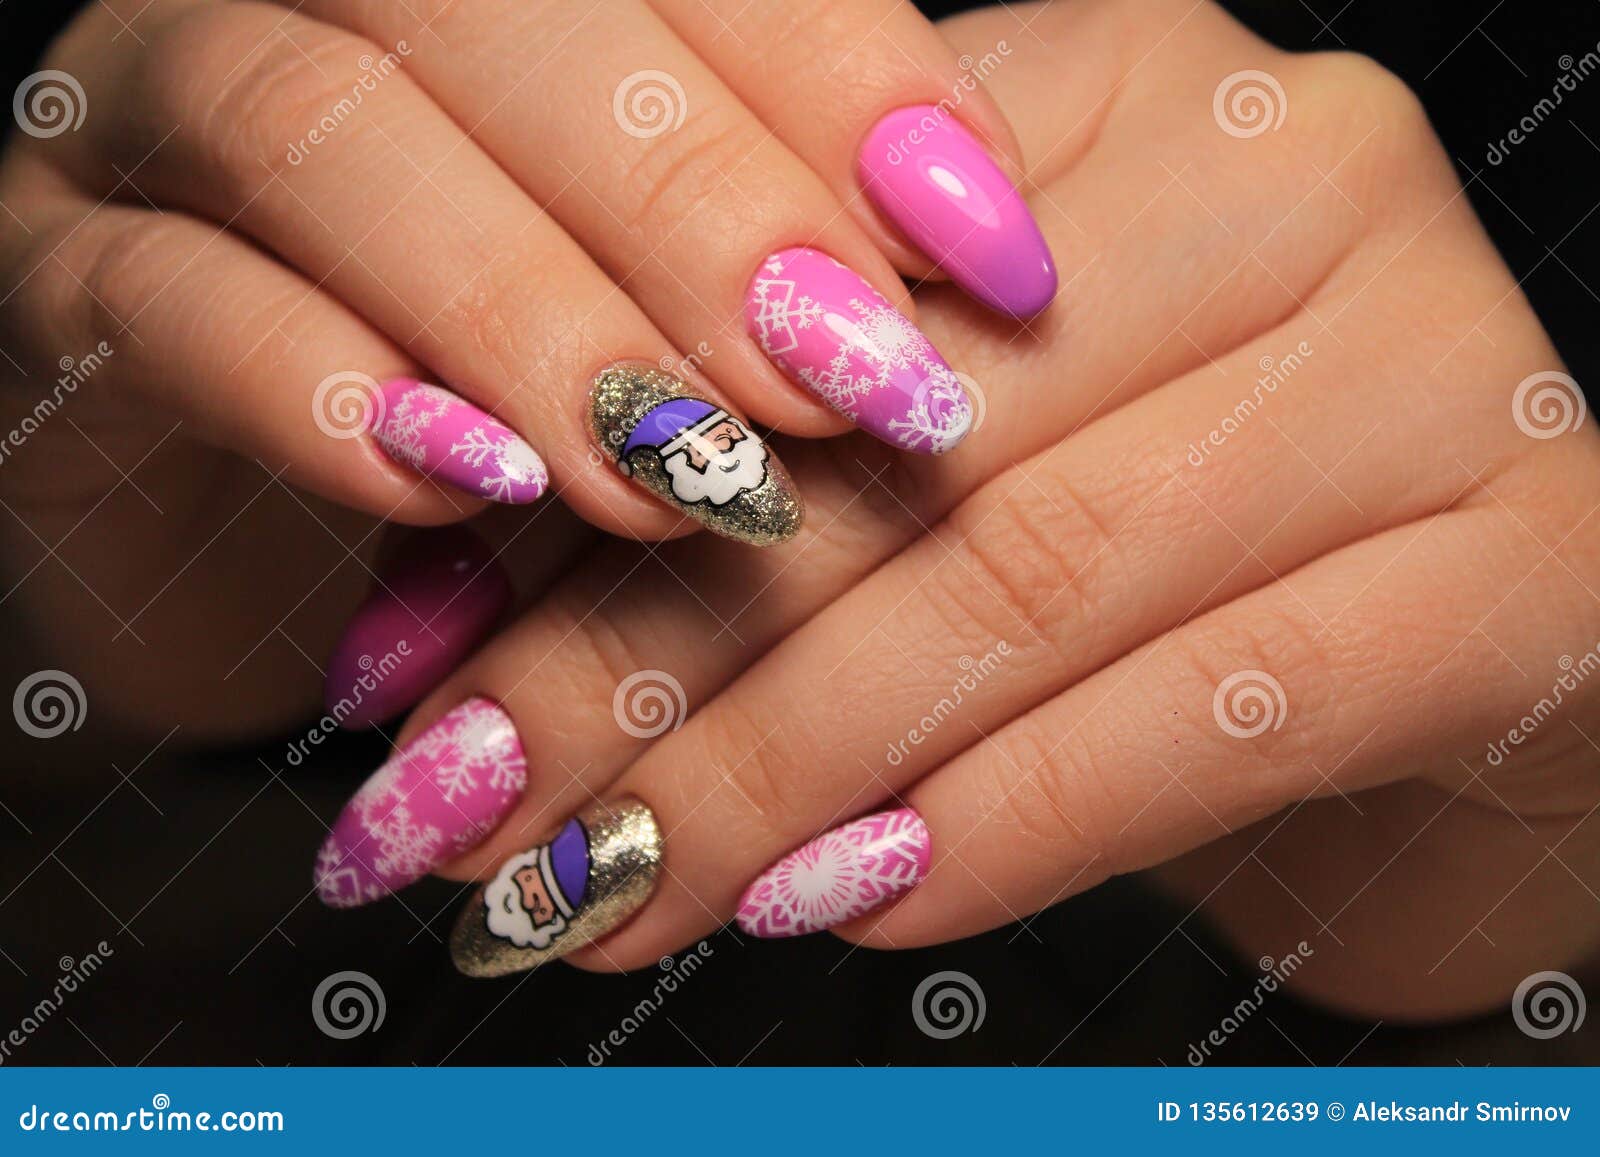 Cute Summer Nail Designs | Cute summer nail designs, Valentine's day nail  designs, Cute summer nails